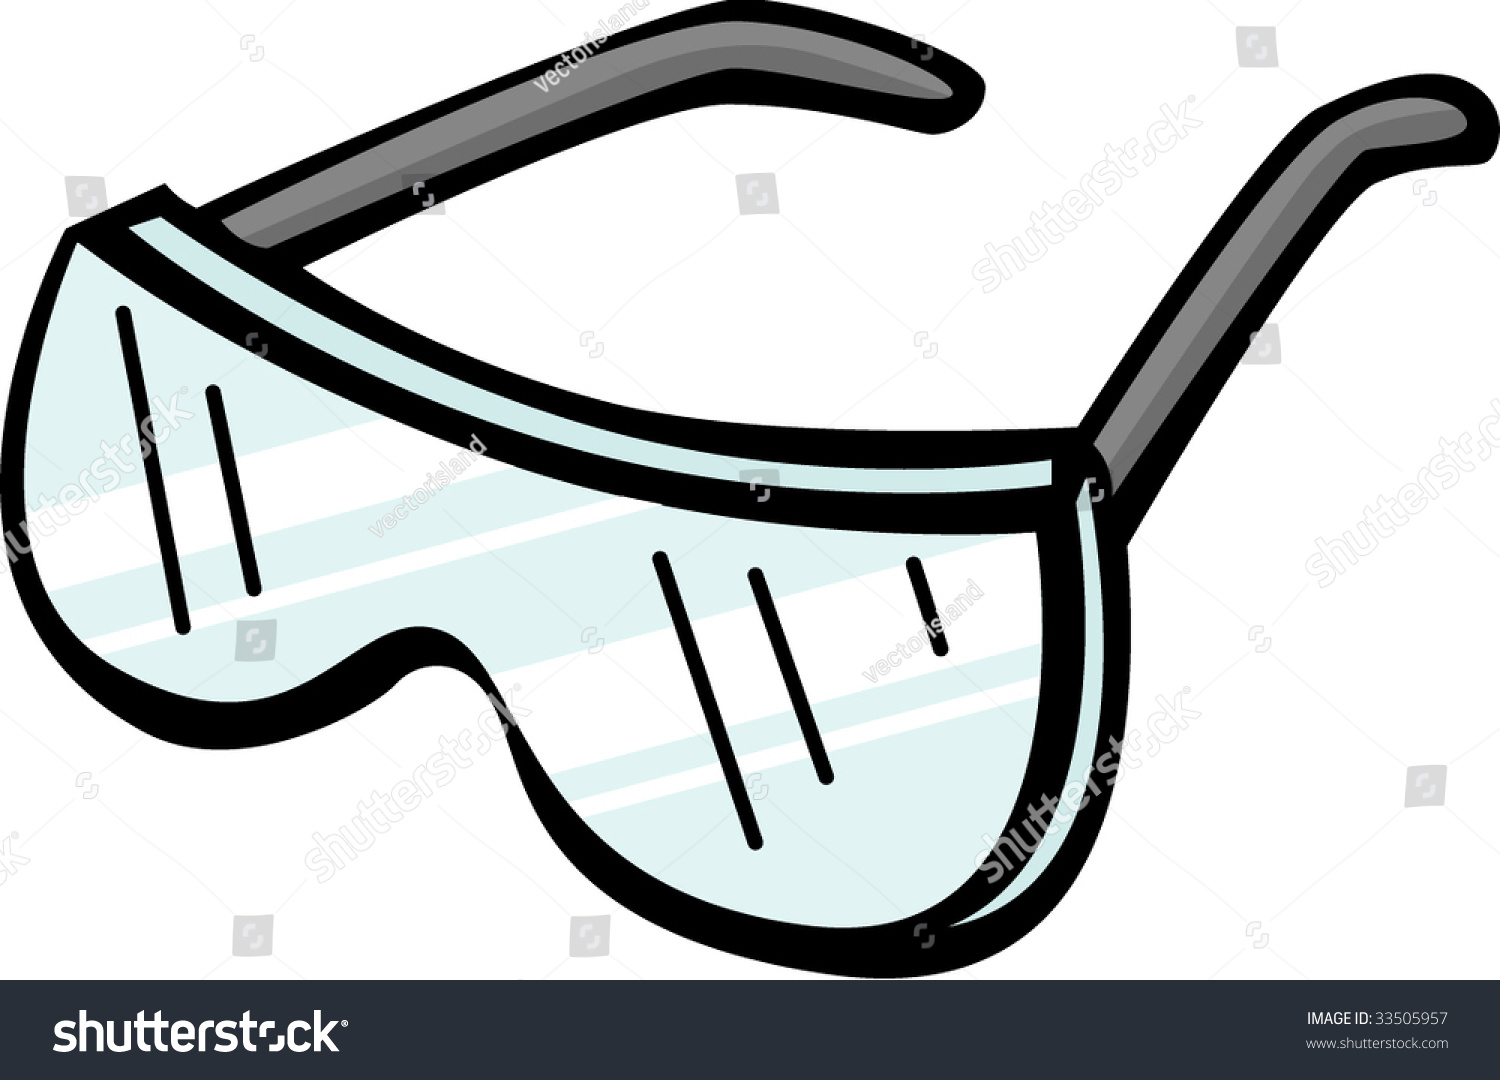 Safety Goggles: стоковая векторная графика (без лицензионных платежей), 335...